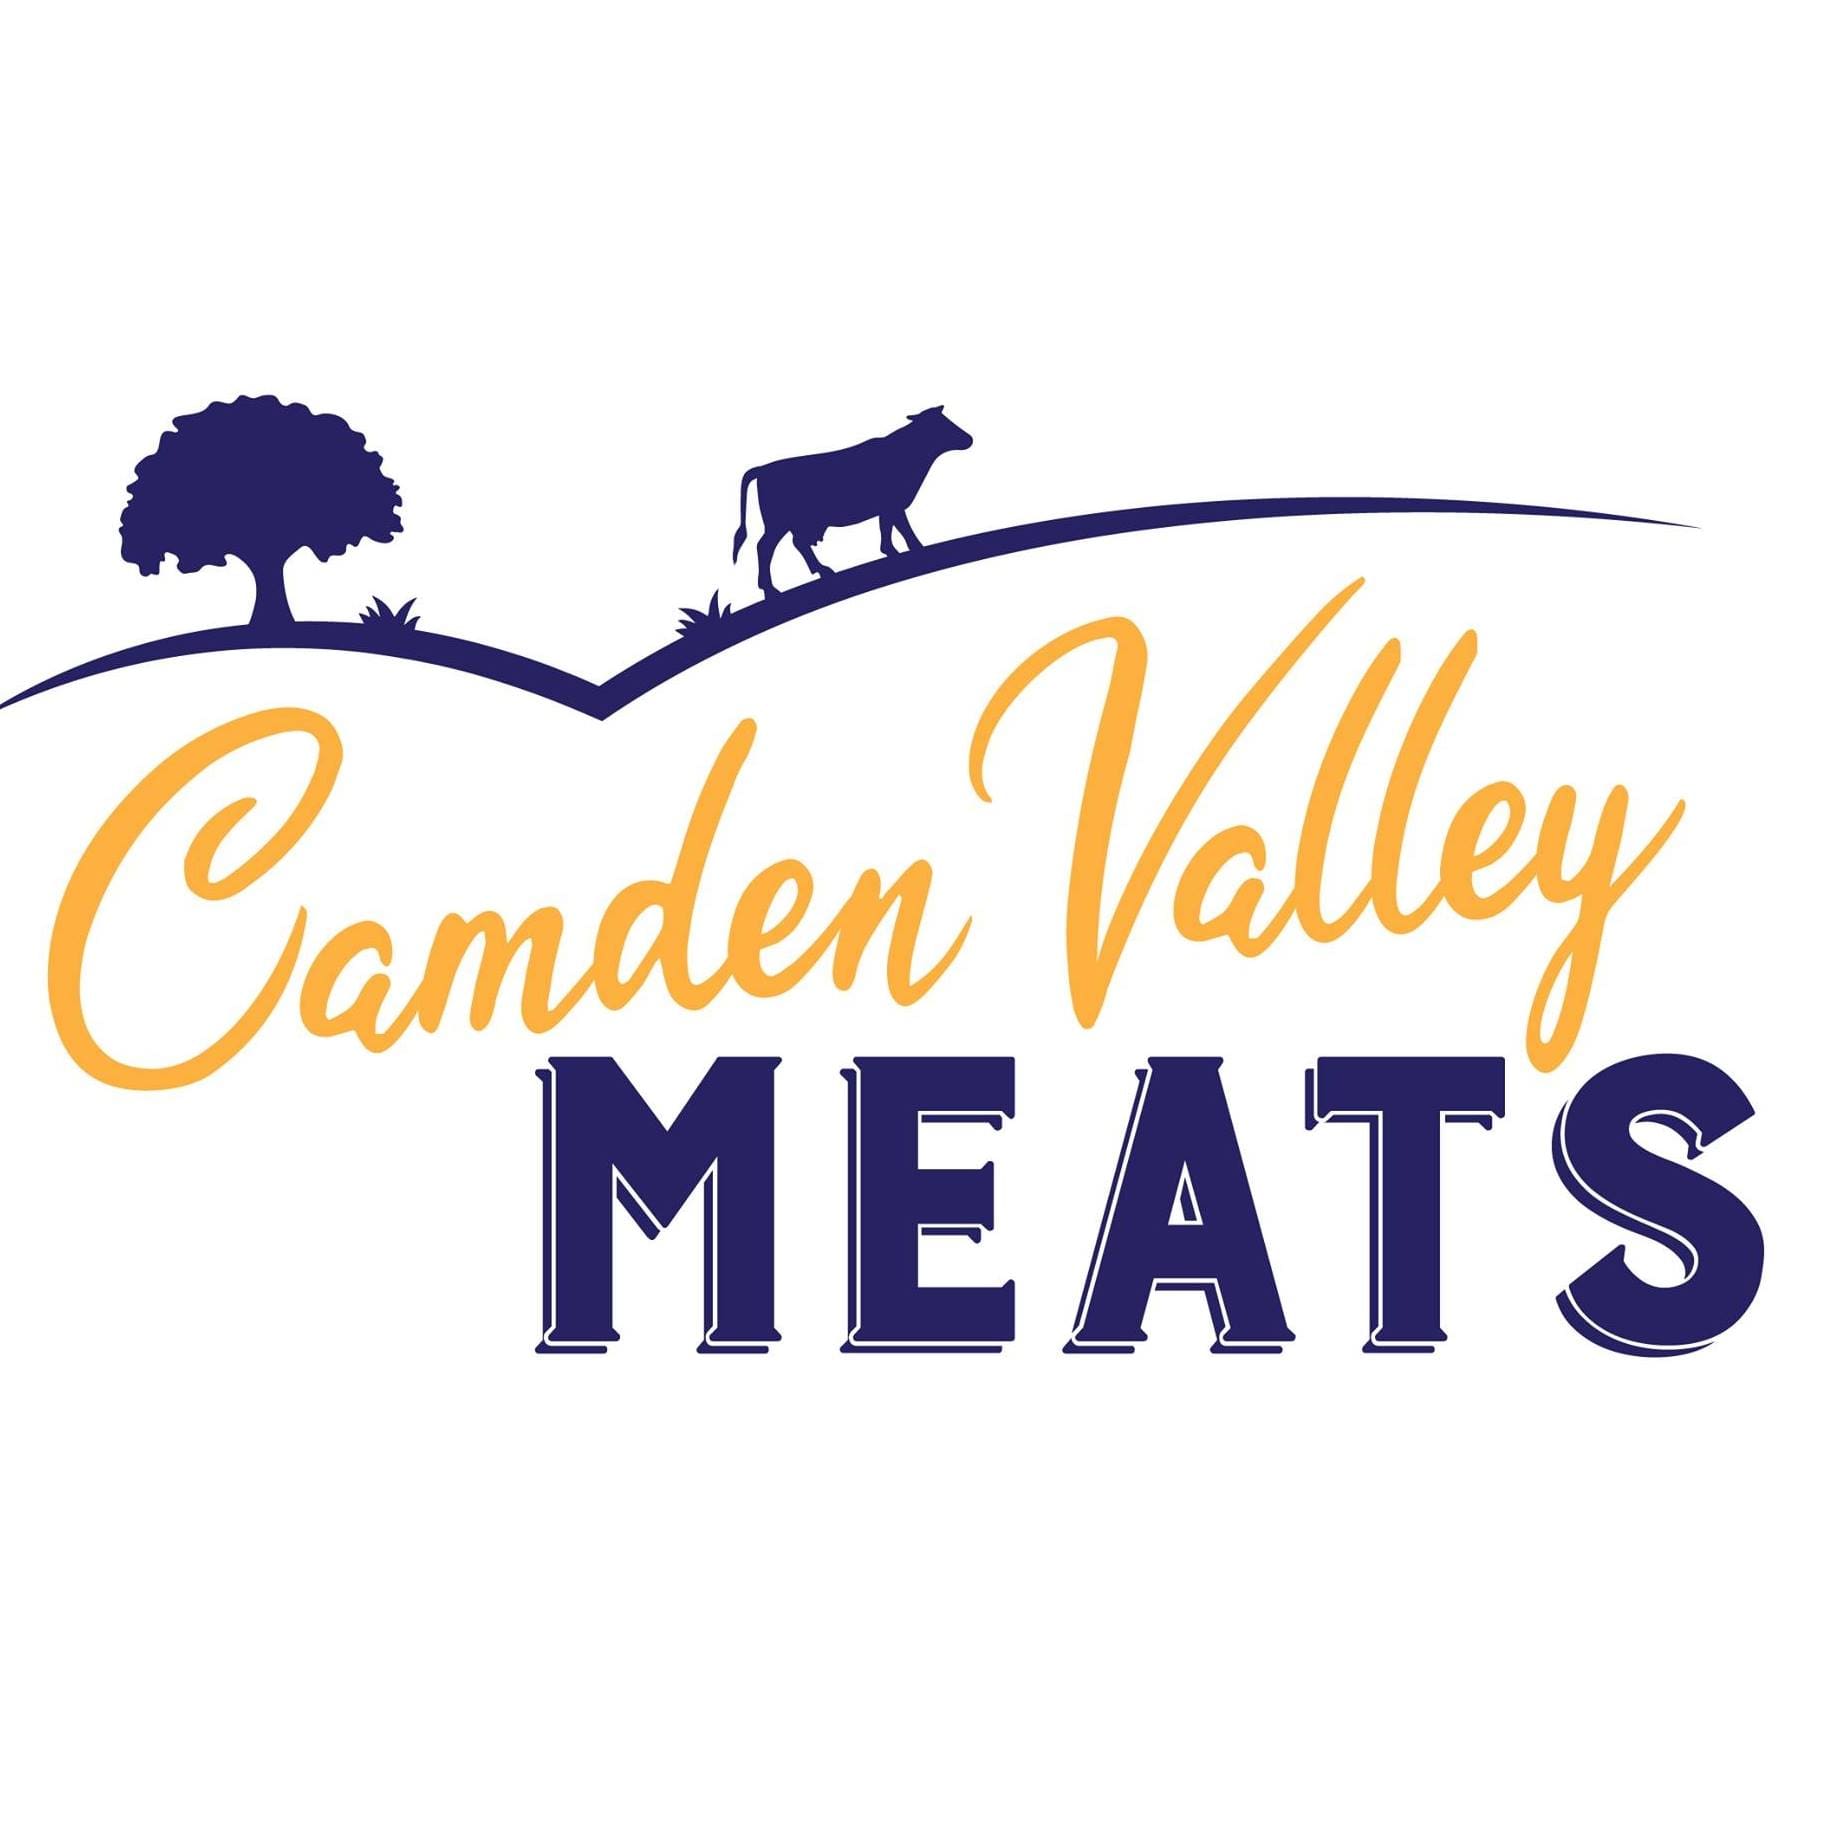 Camden Valley Meats